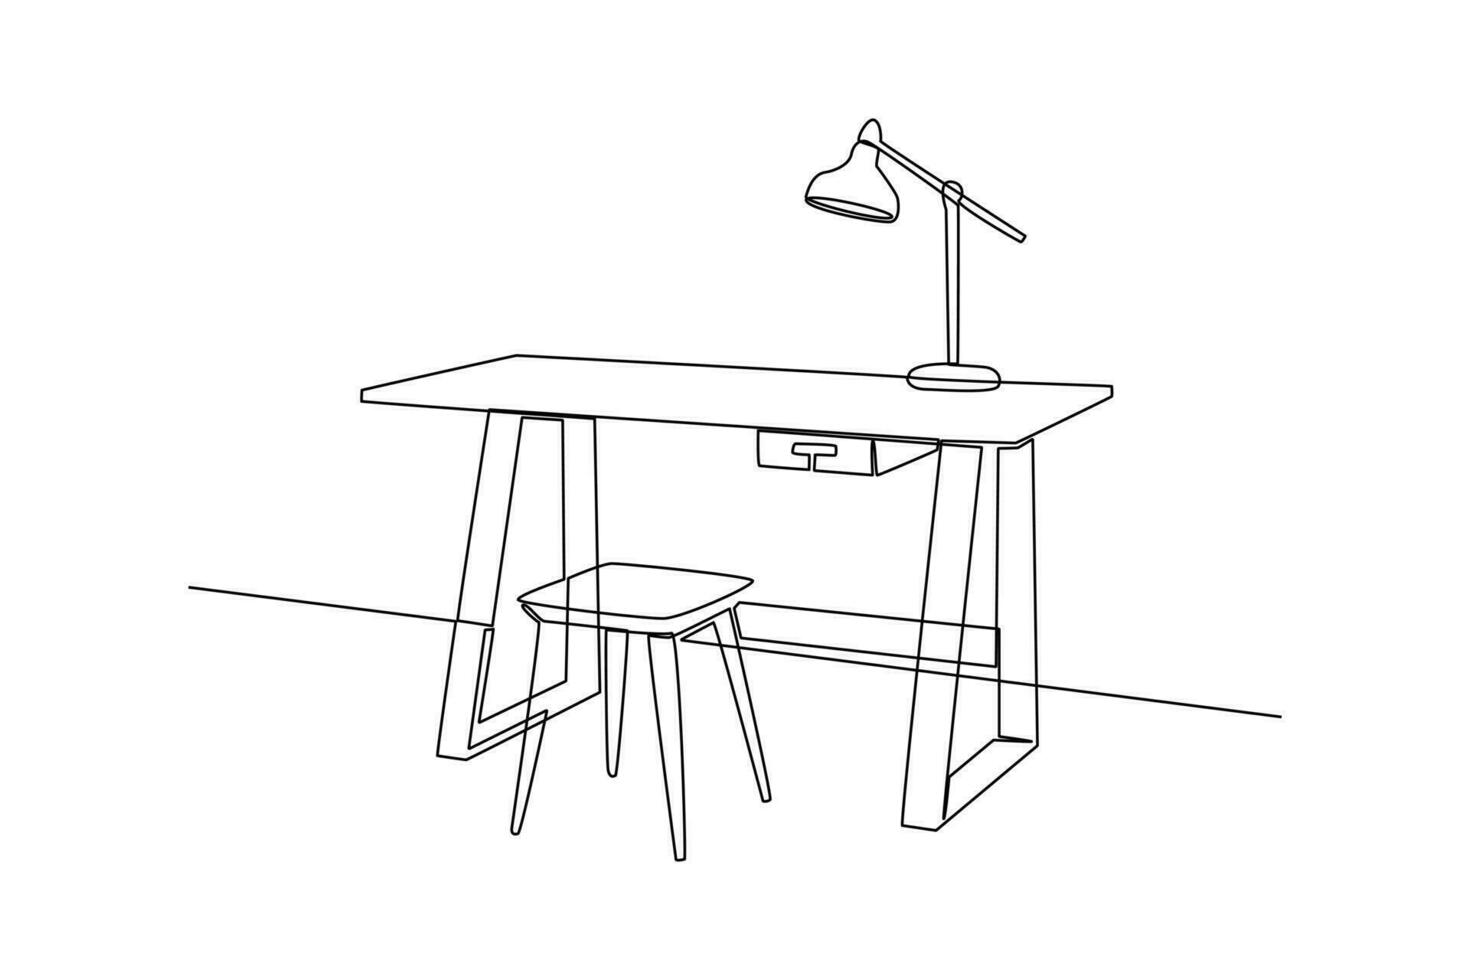 Single einer Linie Zeichnung Büro Arbeitsplatz Möbel Innere Konzept. kontinuierlich Linie zeichnen Design Grafik Vektor Illustration.